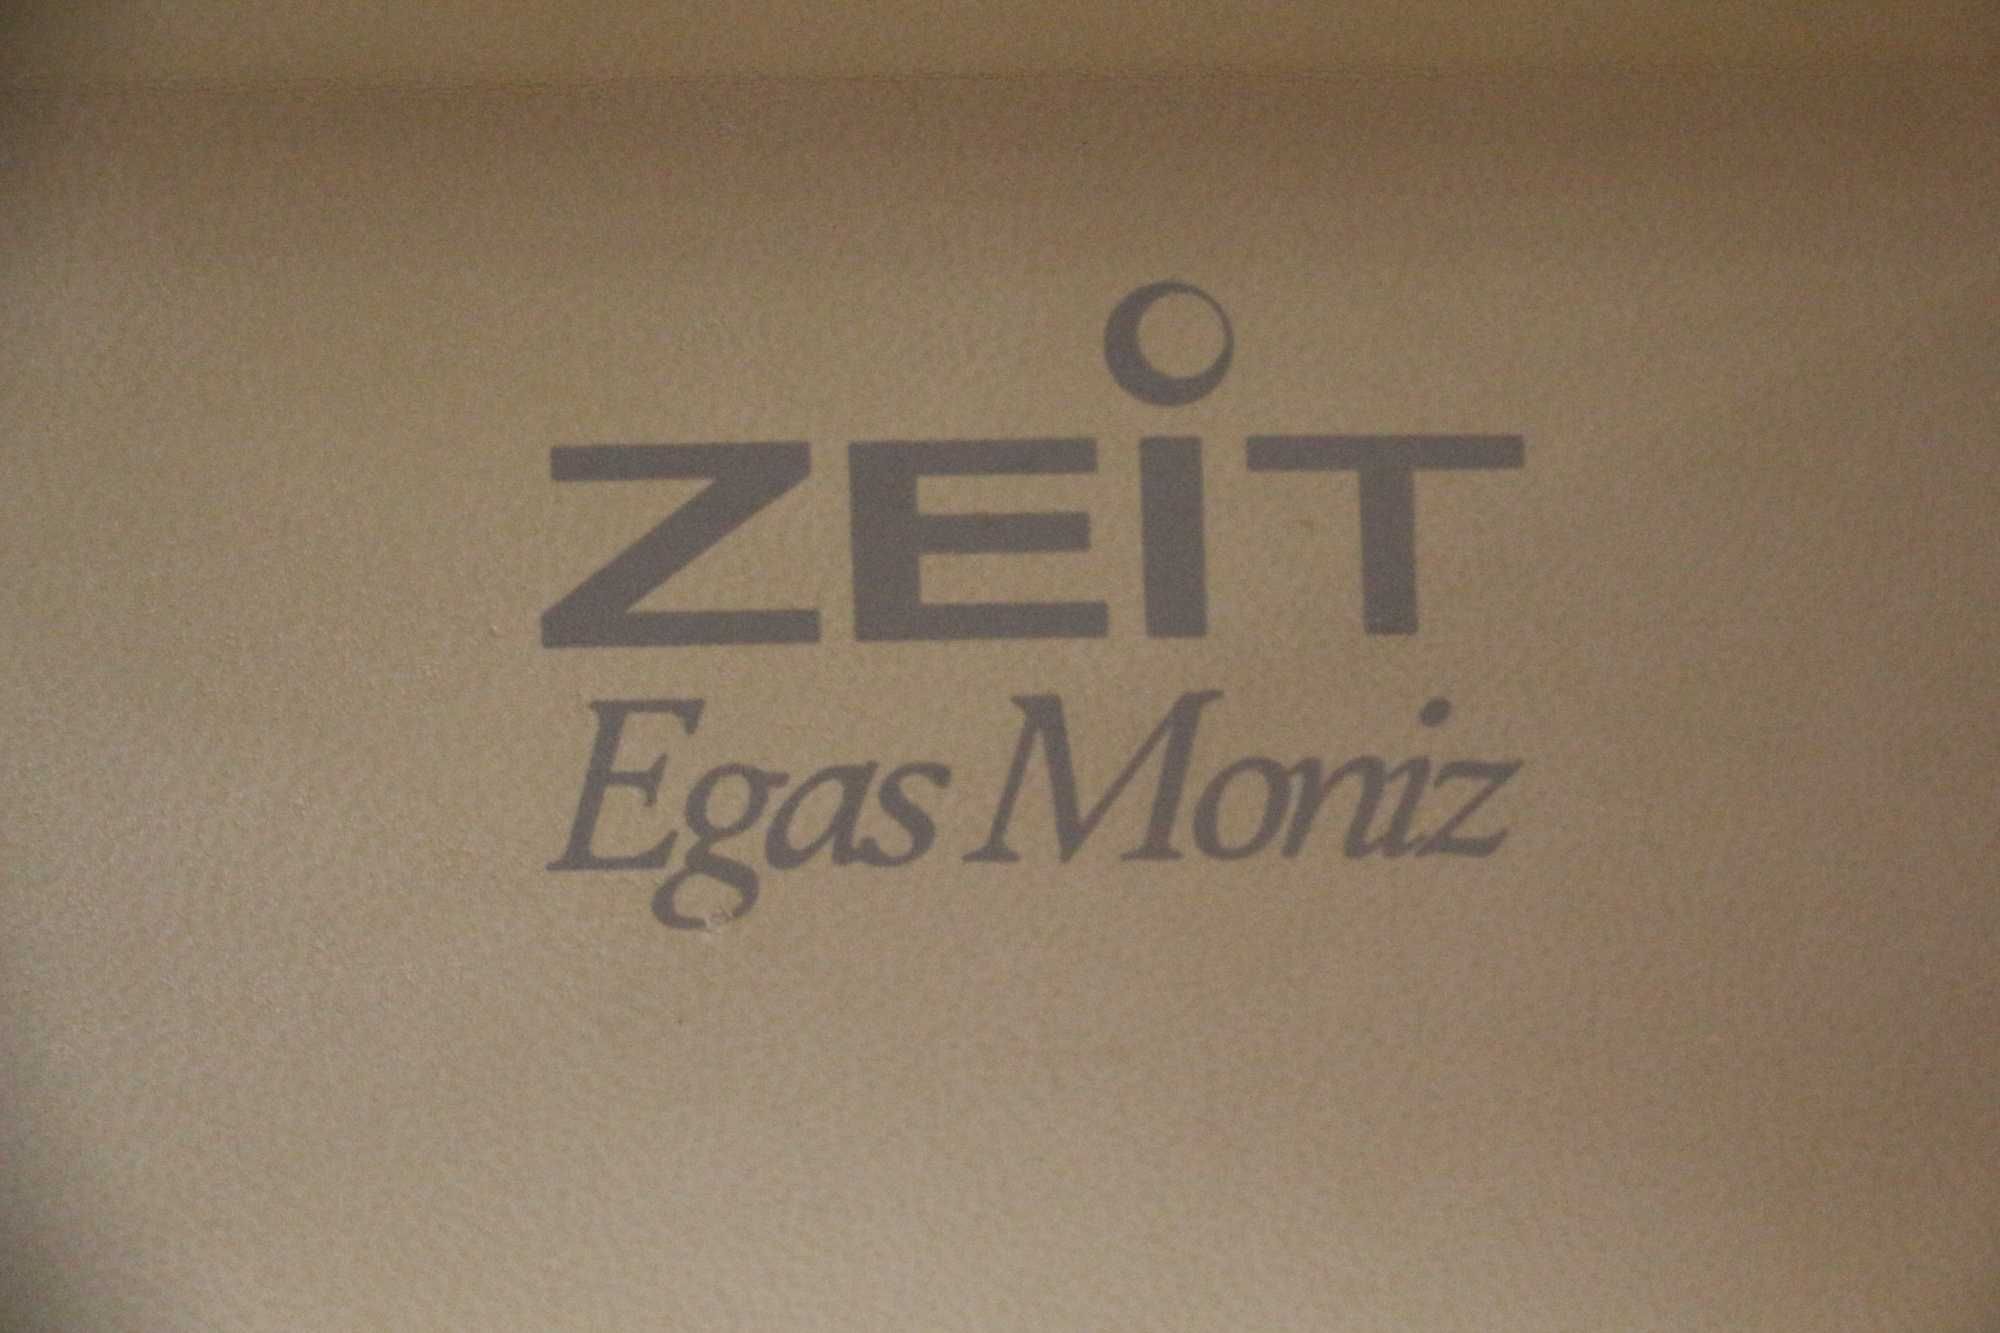 Relógio ZEIT Egas Moniz , edição limitada e numerada